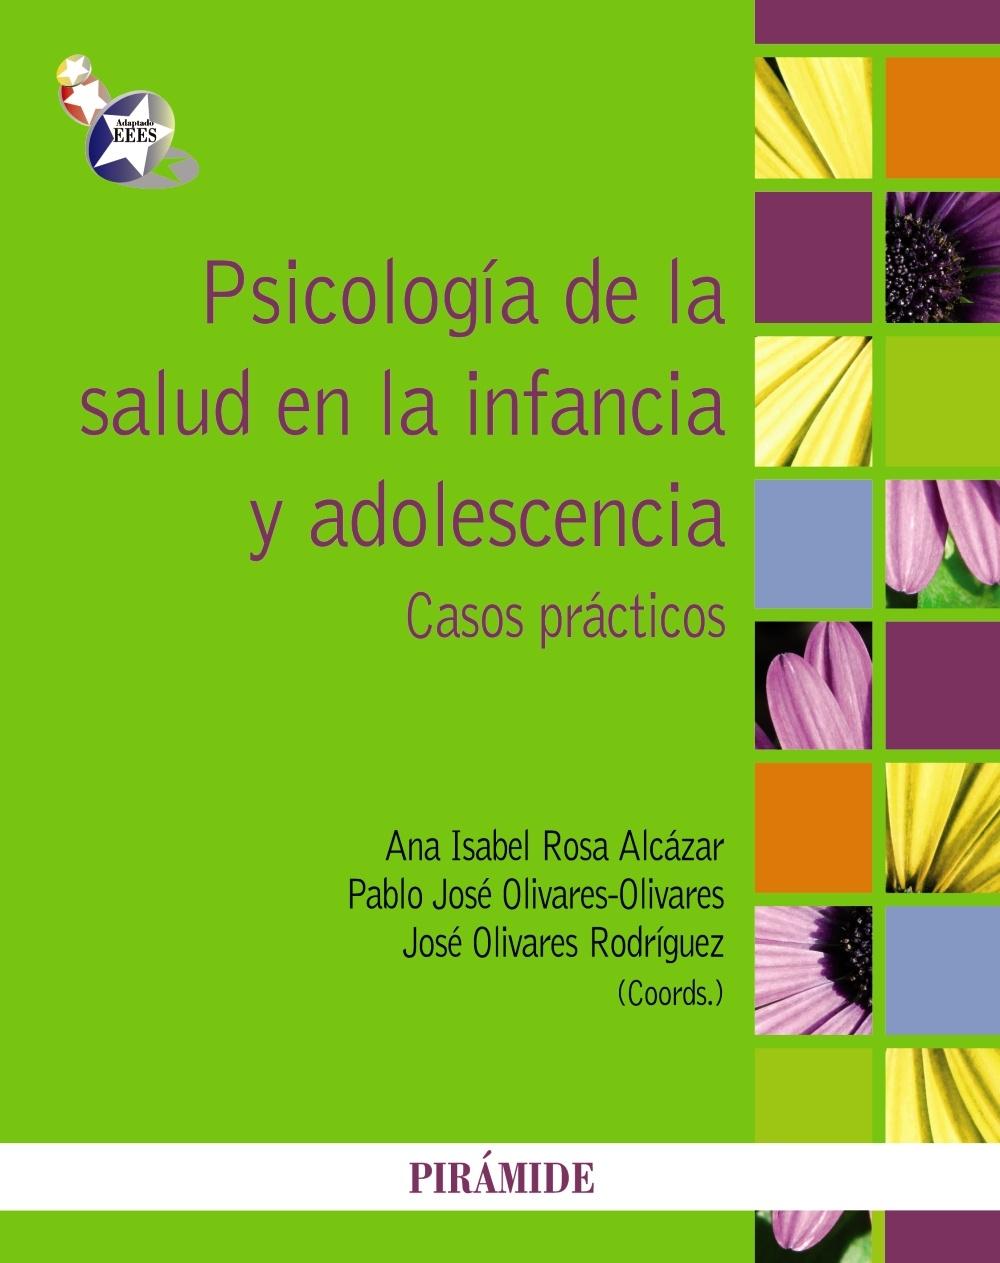 Psicología de la salud en la infancia y adolescencia "Casos prácticos"